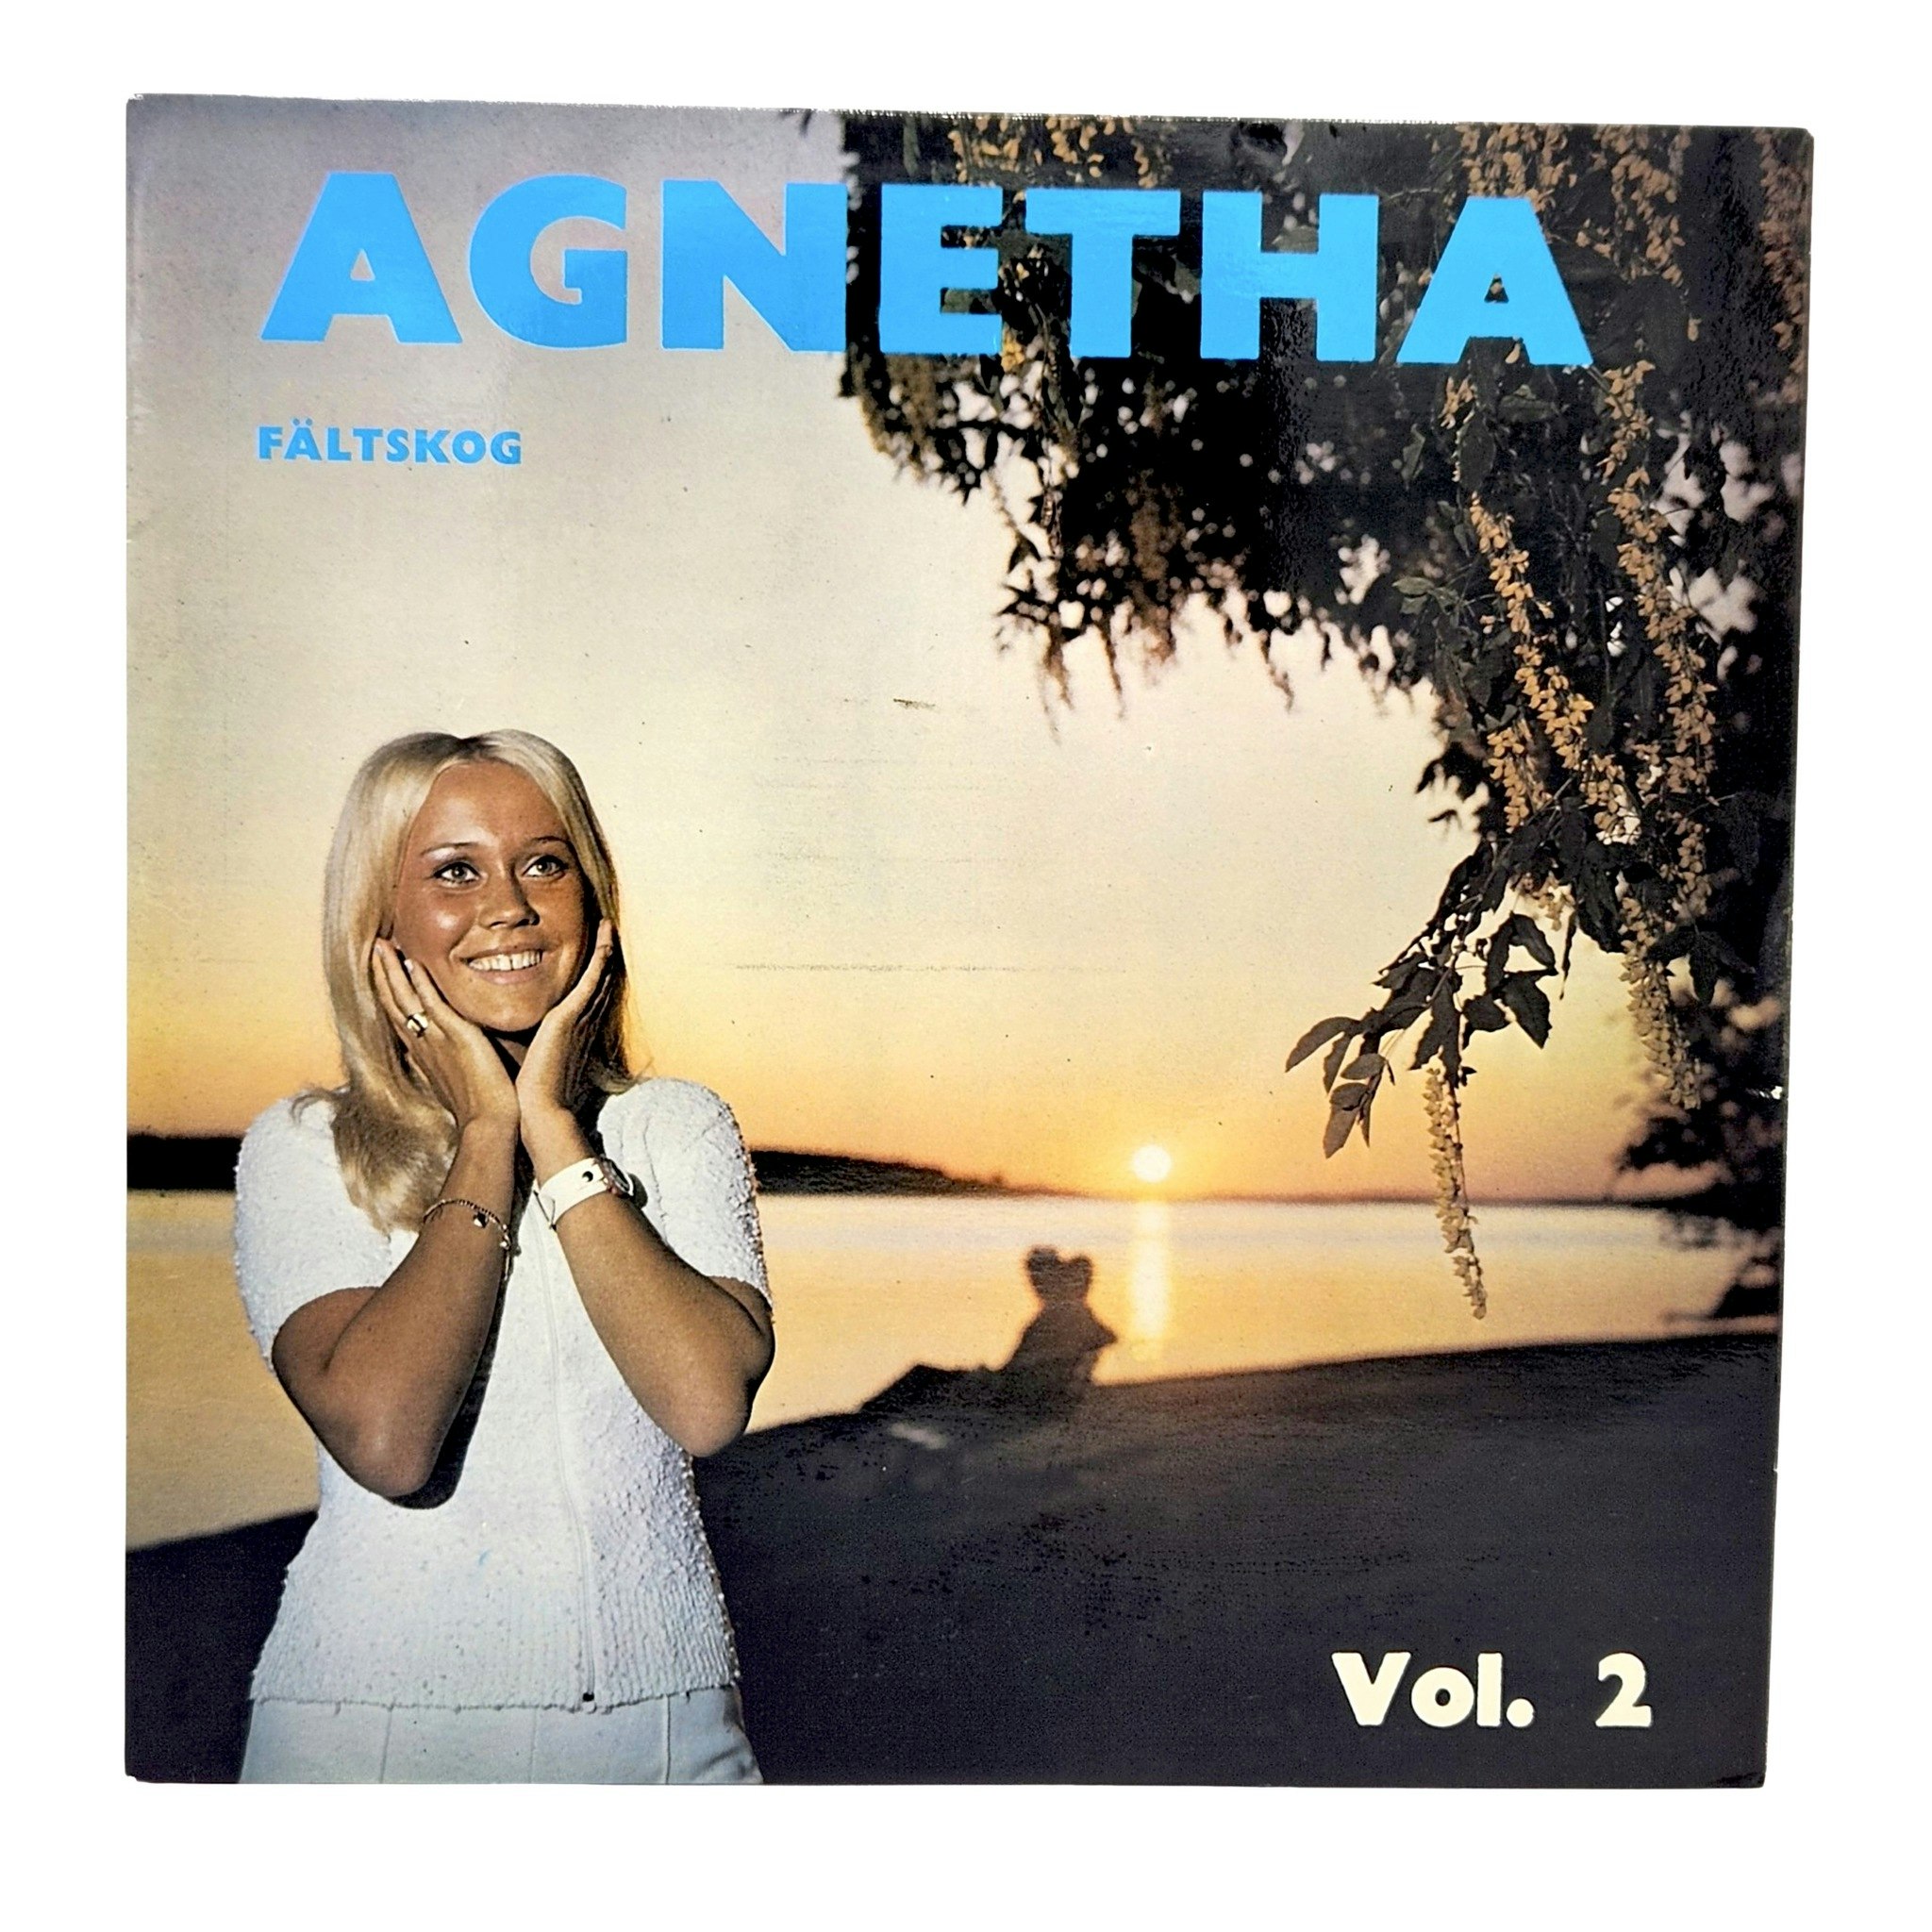 Agnetha Fältskog Band 2, LP Vinyl